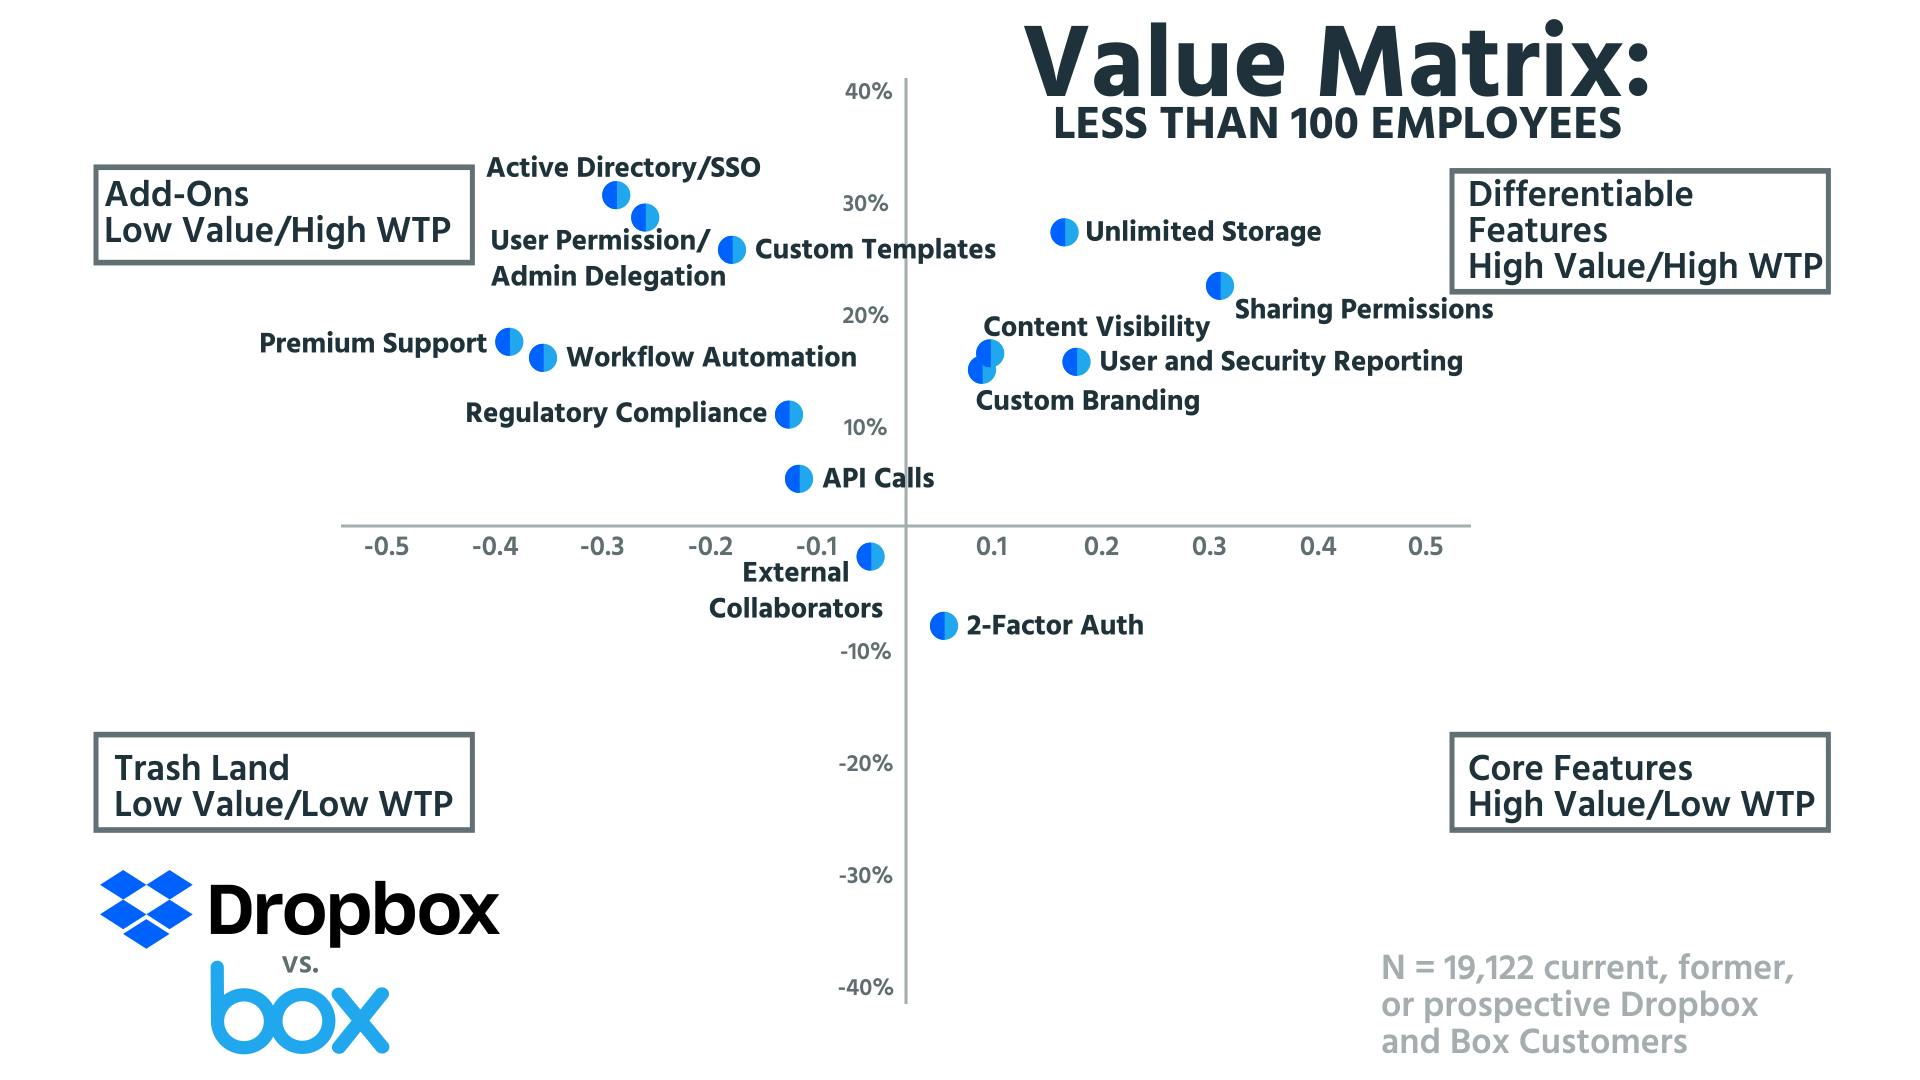 Value Matrix Less than 100 